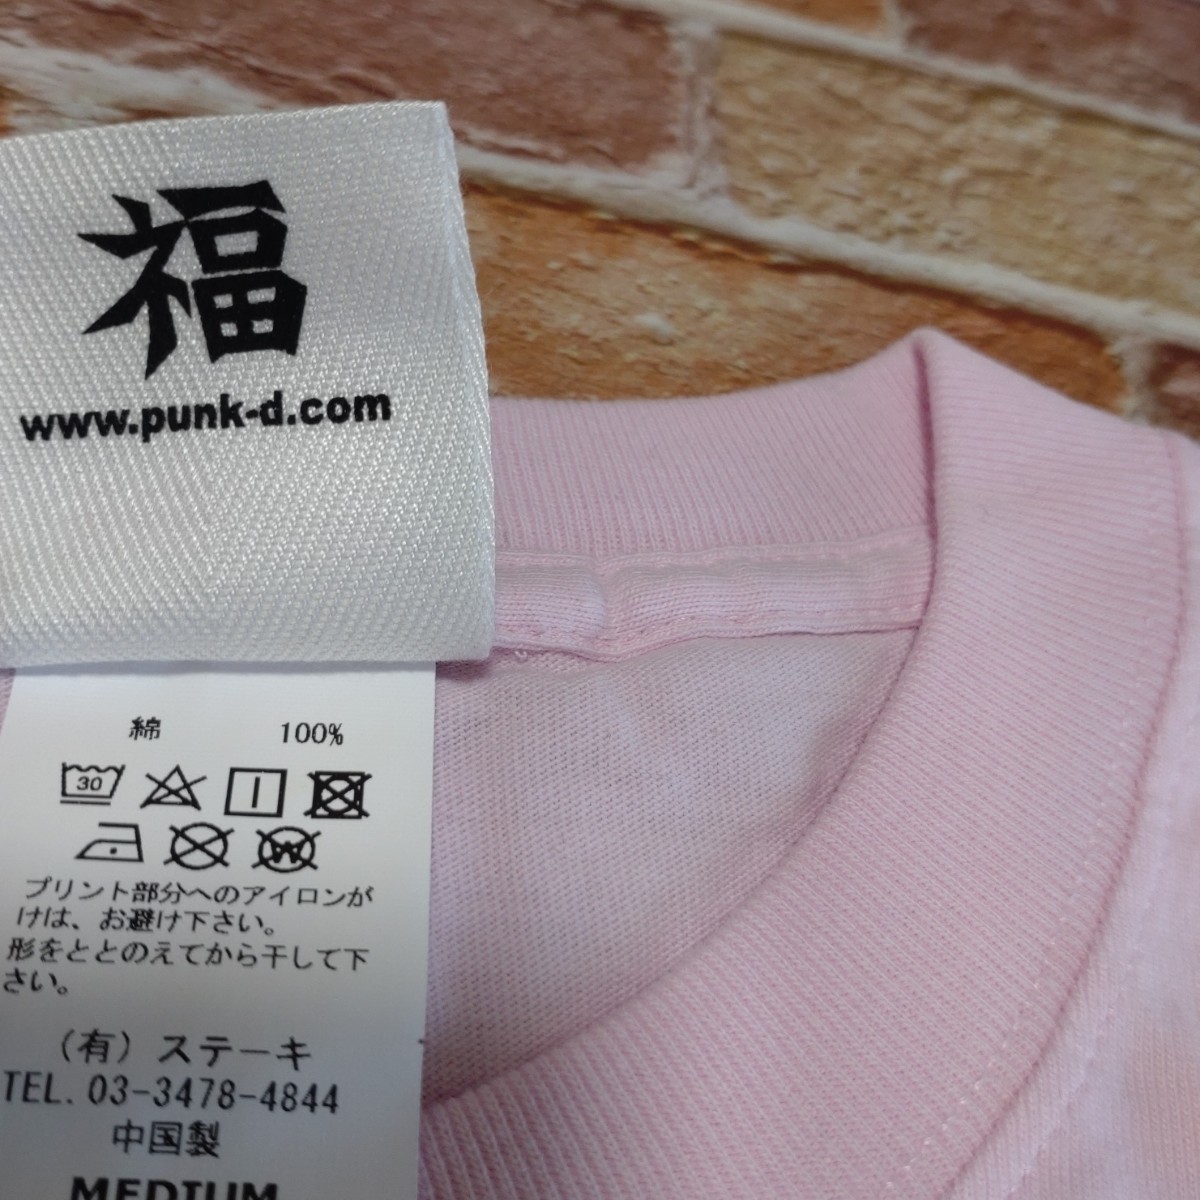 【新品☆希少】へきトラハウス×パンクドランカーズ Tシャツ M ピンク_画像4